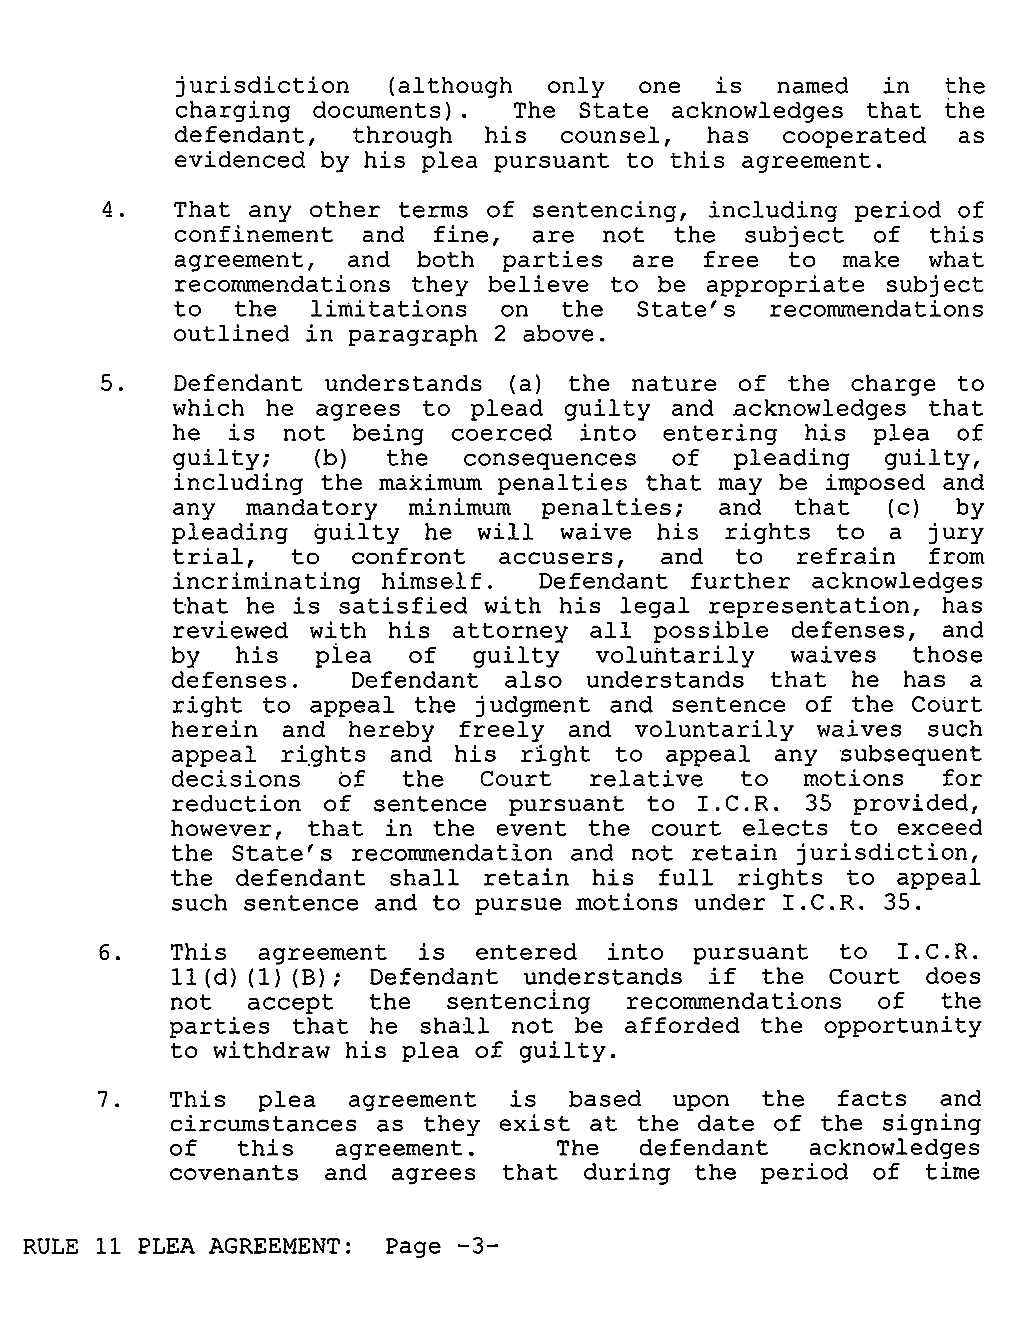 Steven Sitler: Rule 11 Plea Agreement, page 3